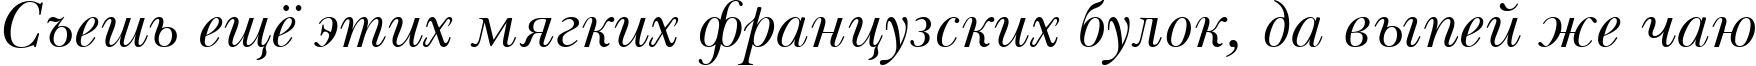 Пример написания шрифтом Baskerville Italic Win95BT текста на русском